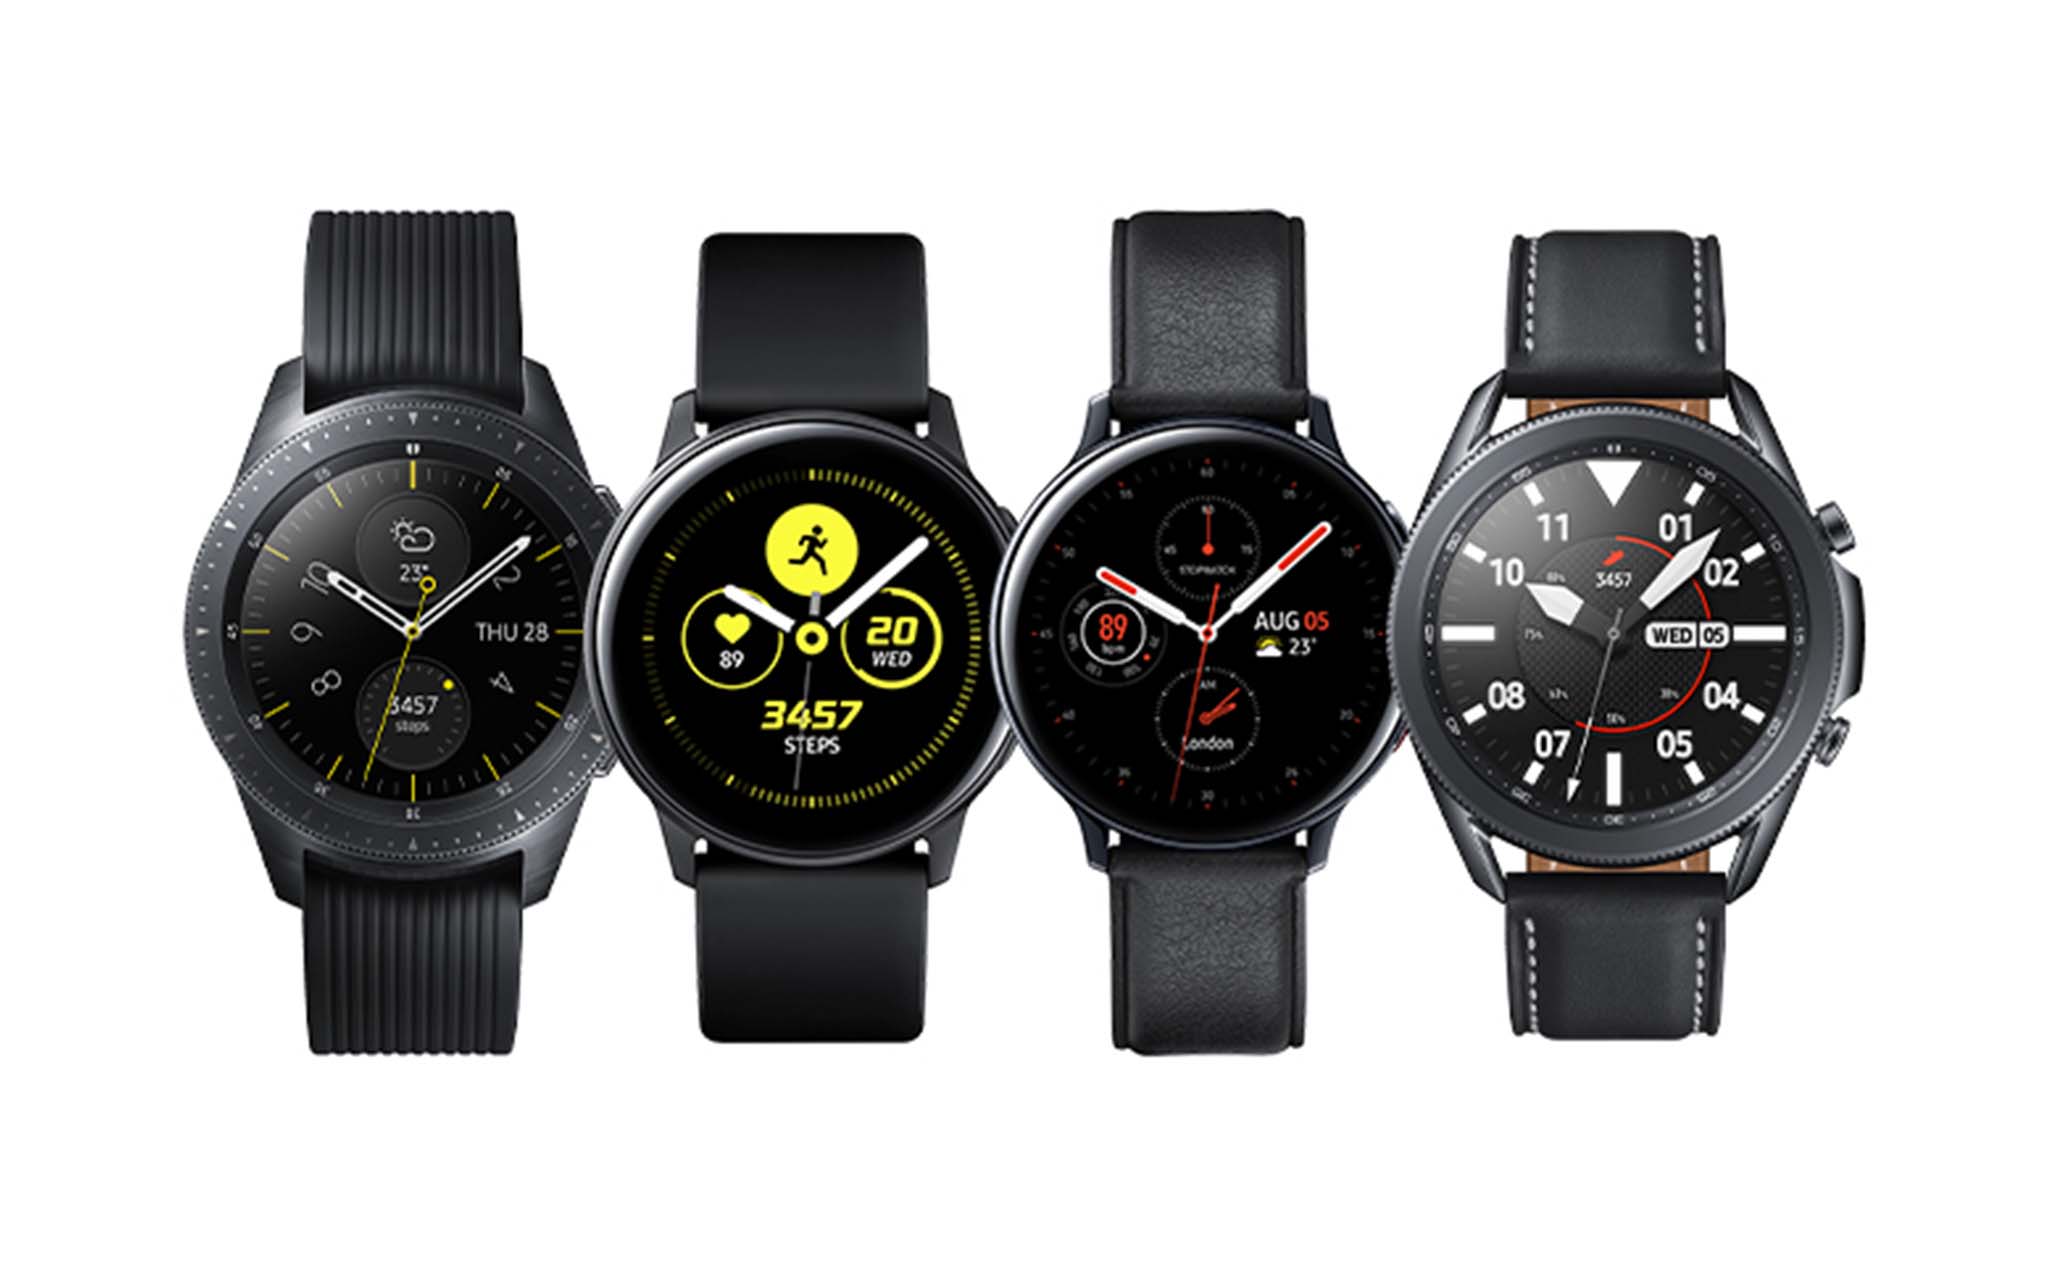 Samsung cập nhật thêm một số tính năng về sức khoẻ cho hàng loạt đồng hồ Galaxy Watch